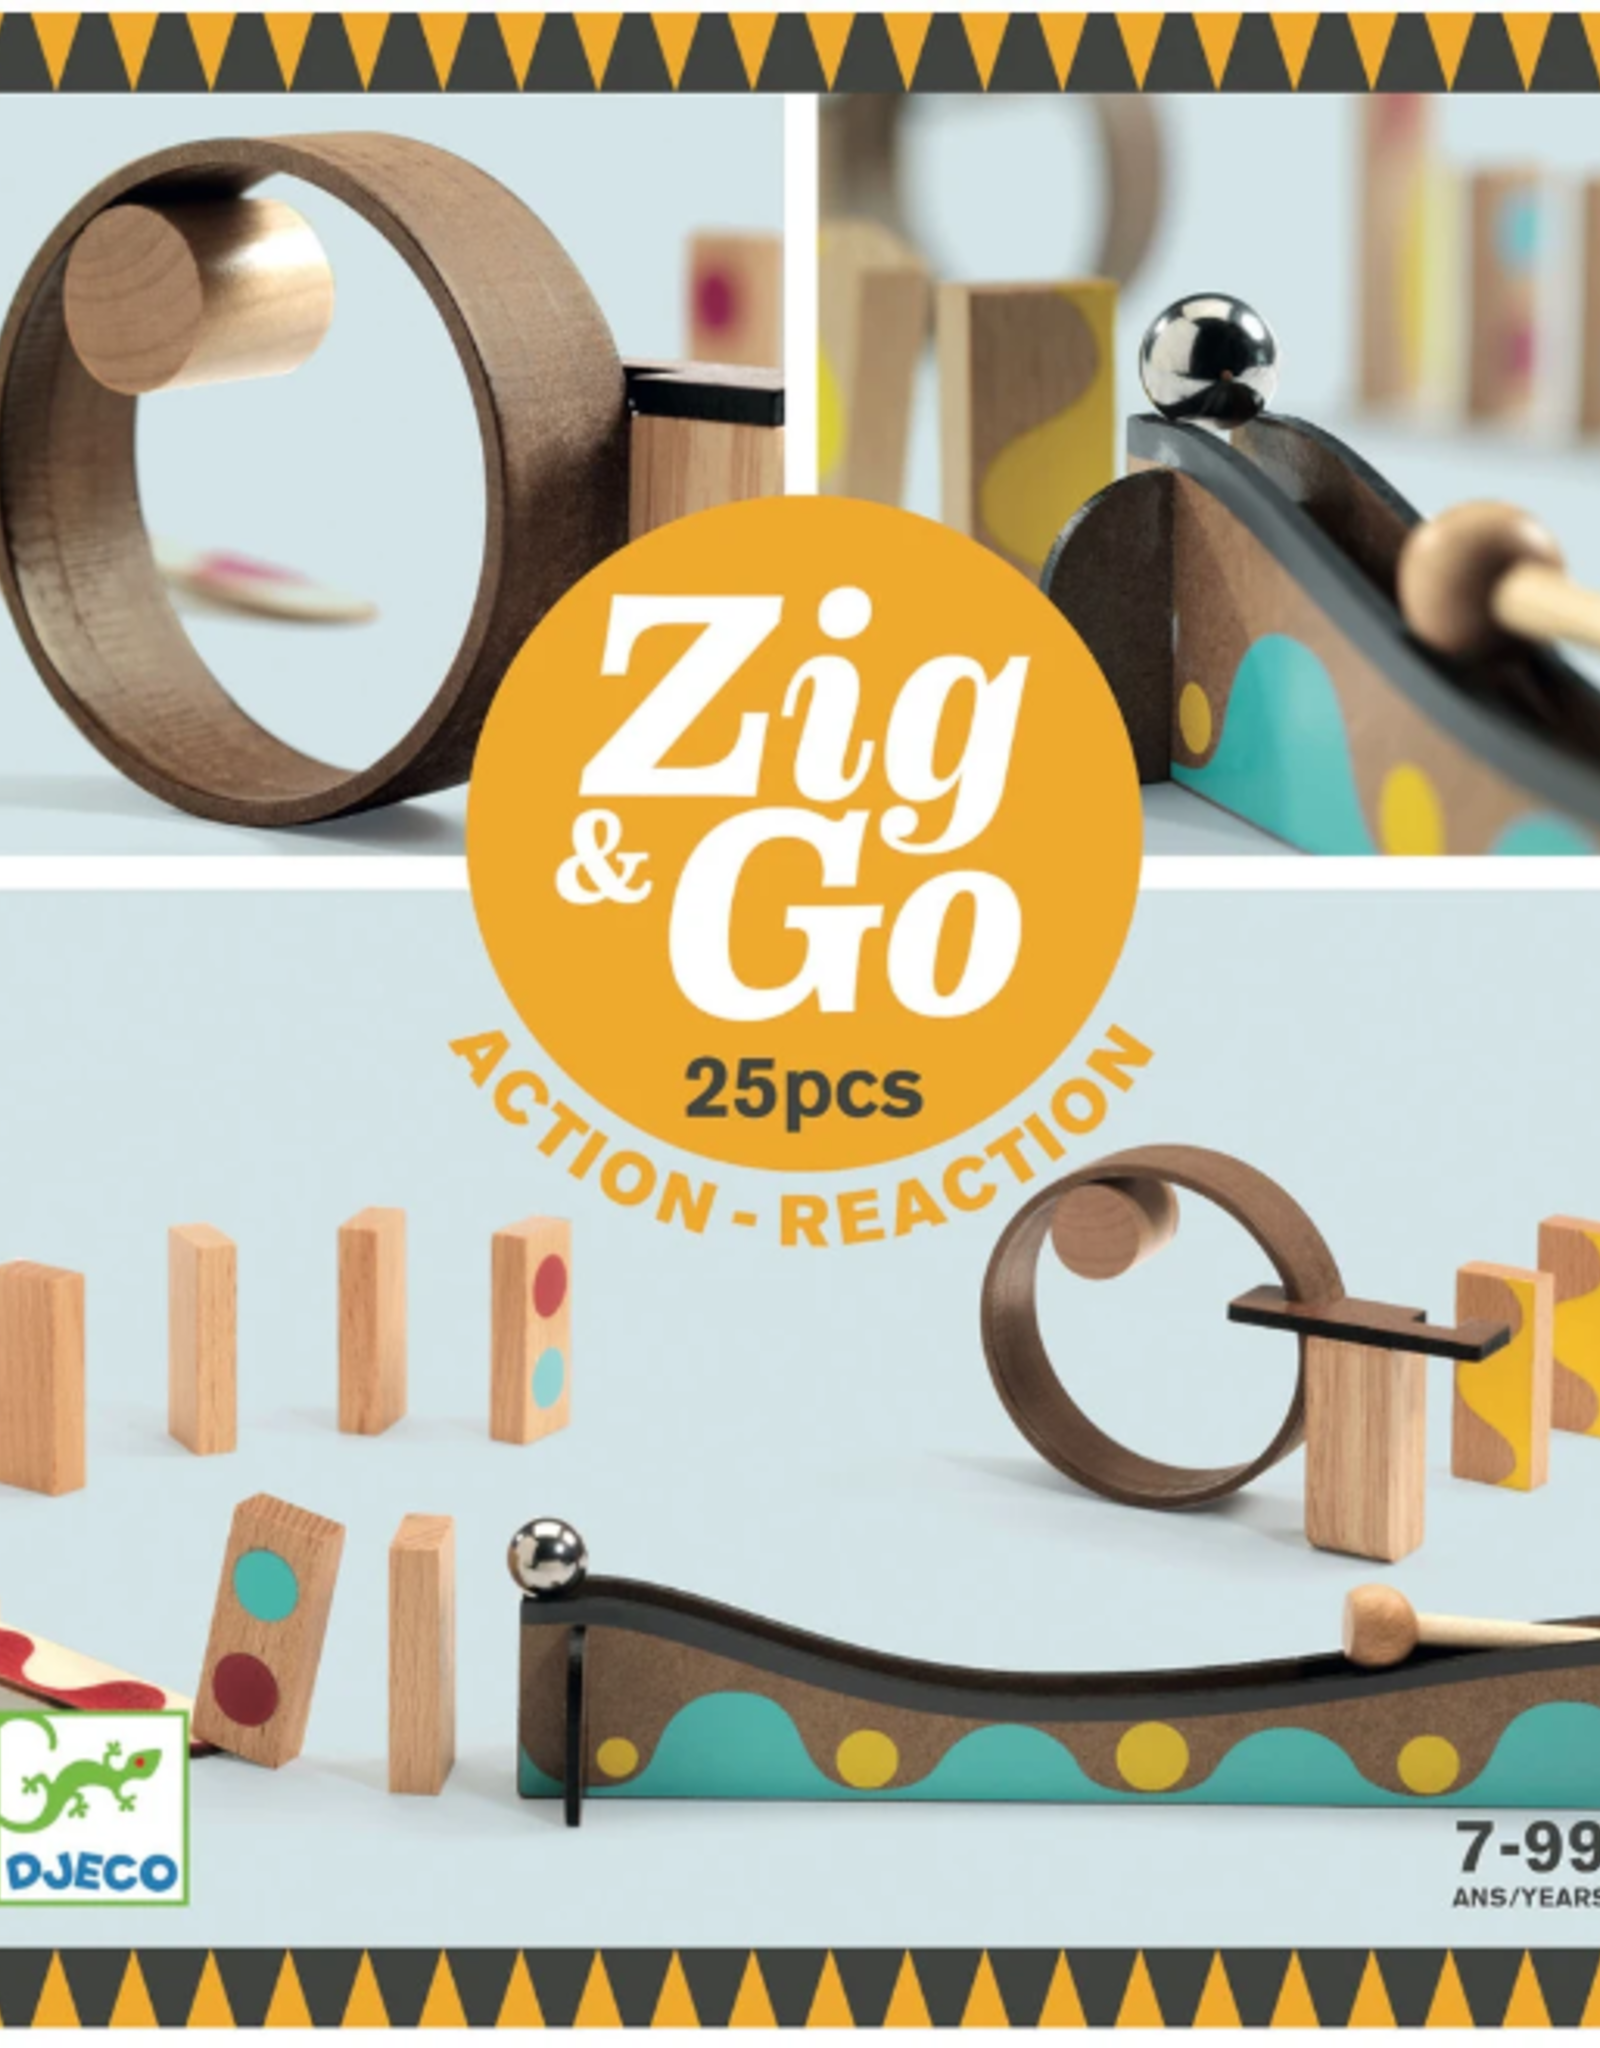 Djeco Zig & Go: 25pcs